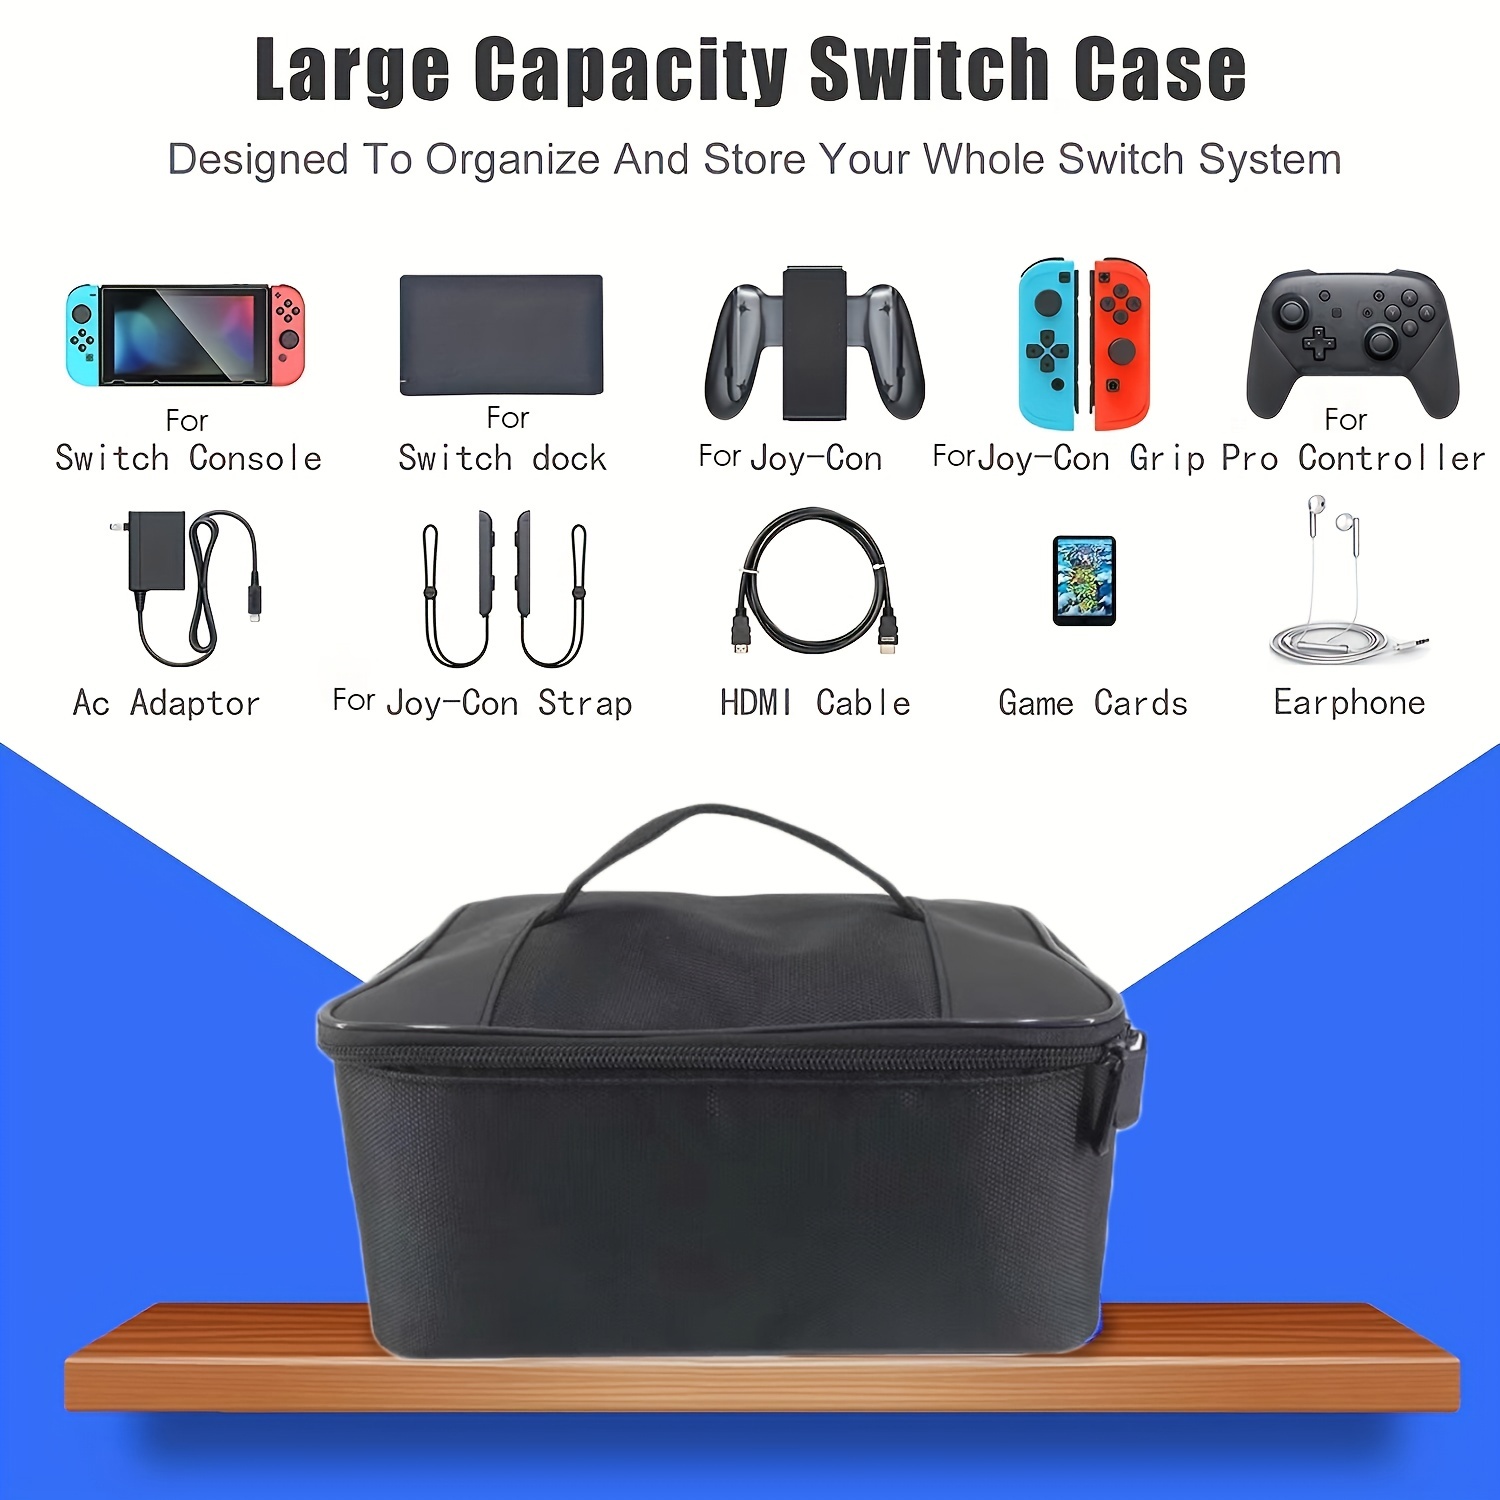 Sacoche, housse, valise de transport pour Nintendo Switch / Switch